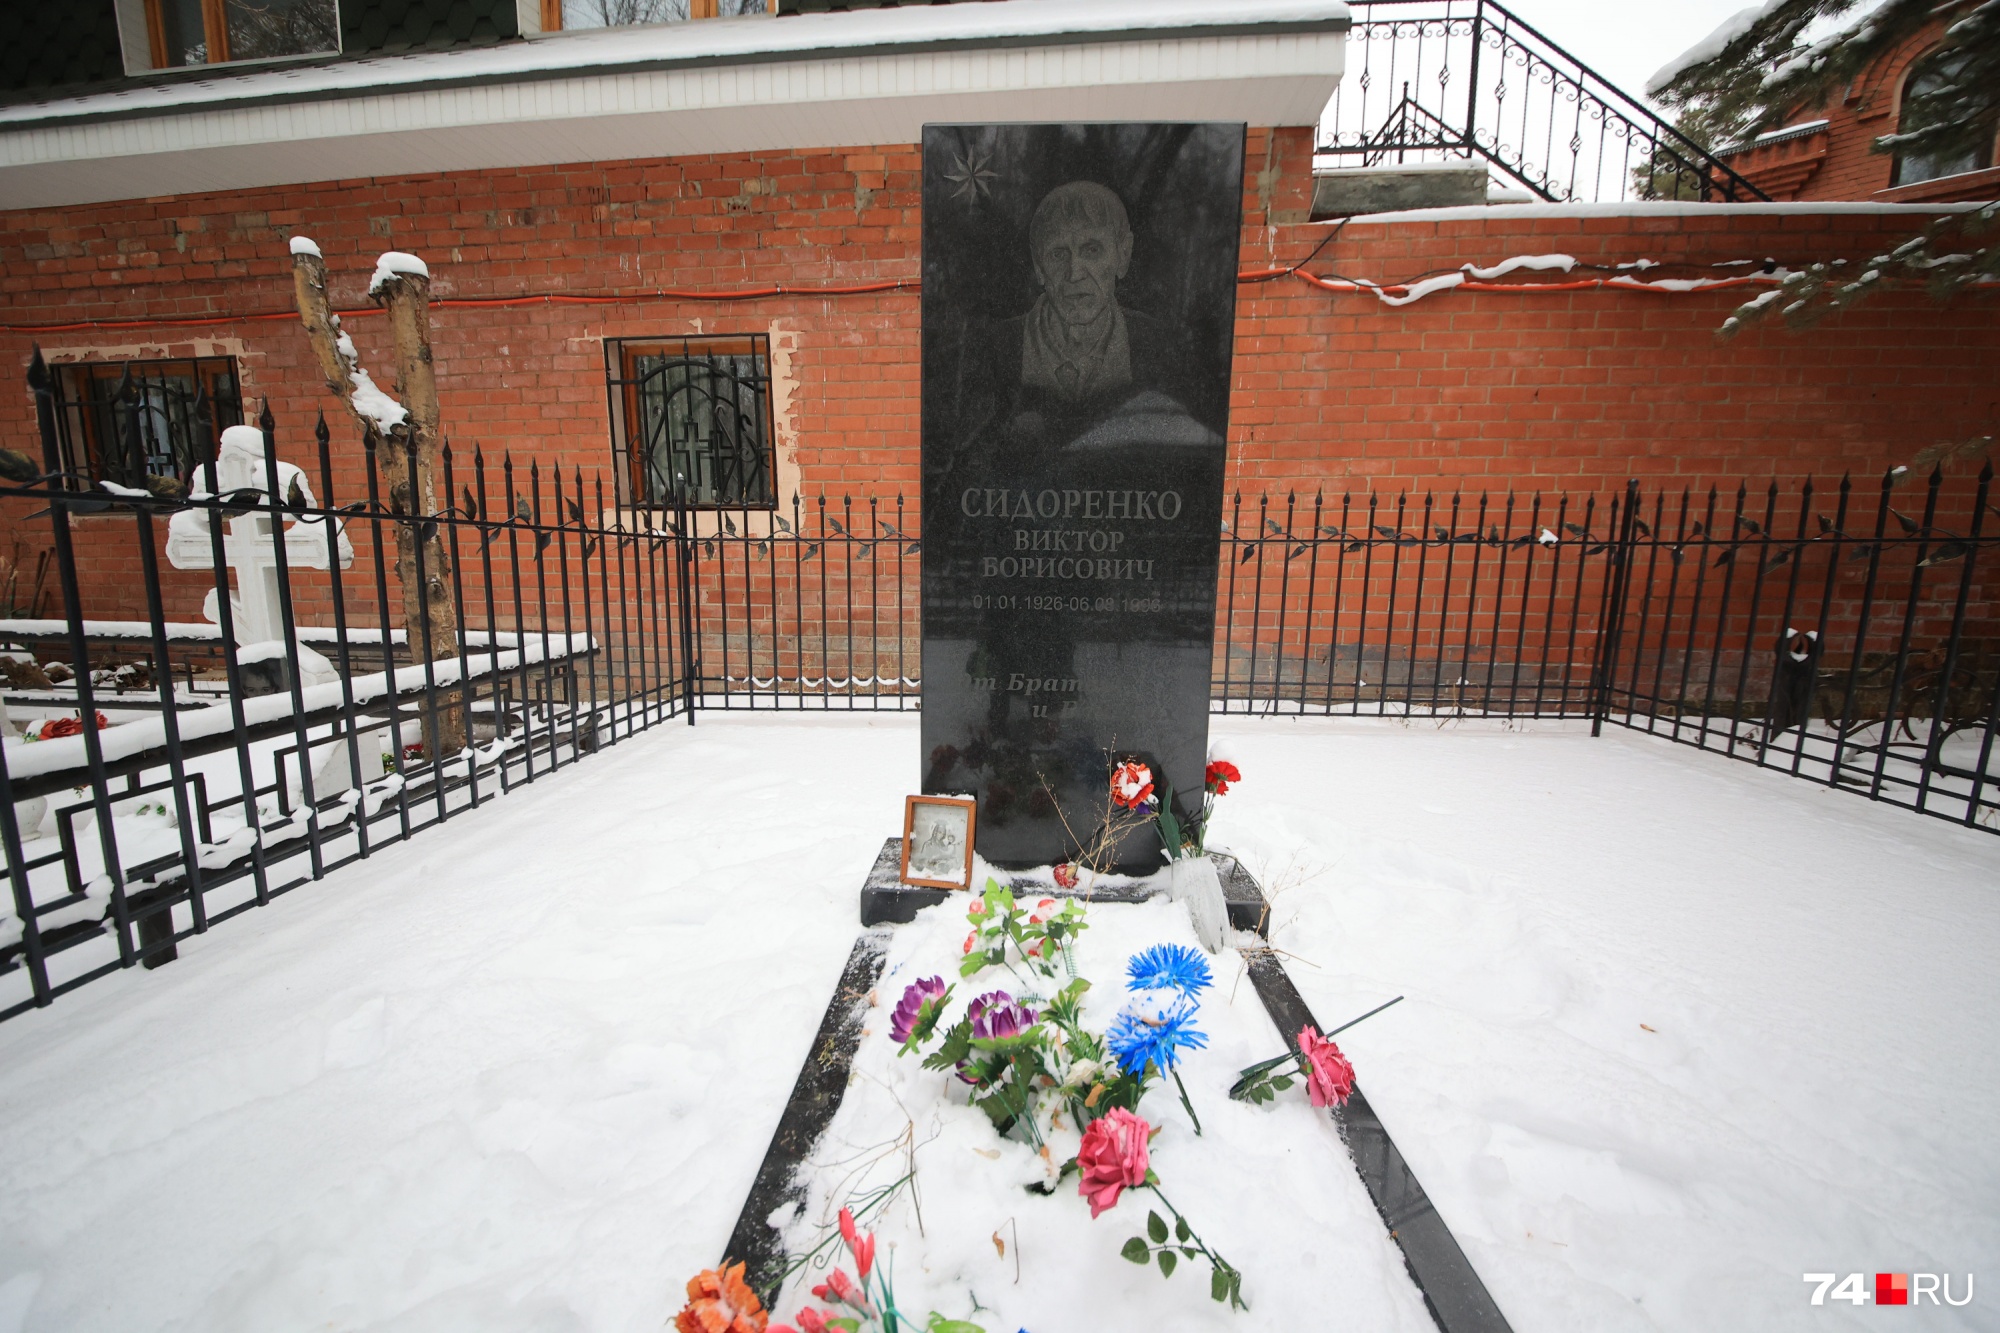 Похоронен Сидоренко на Митрофановском кладбище